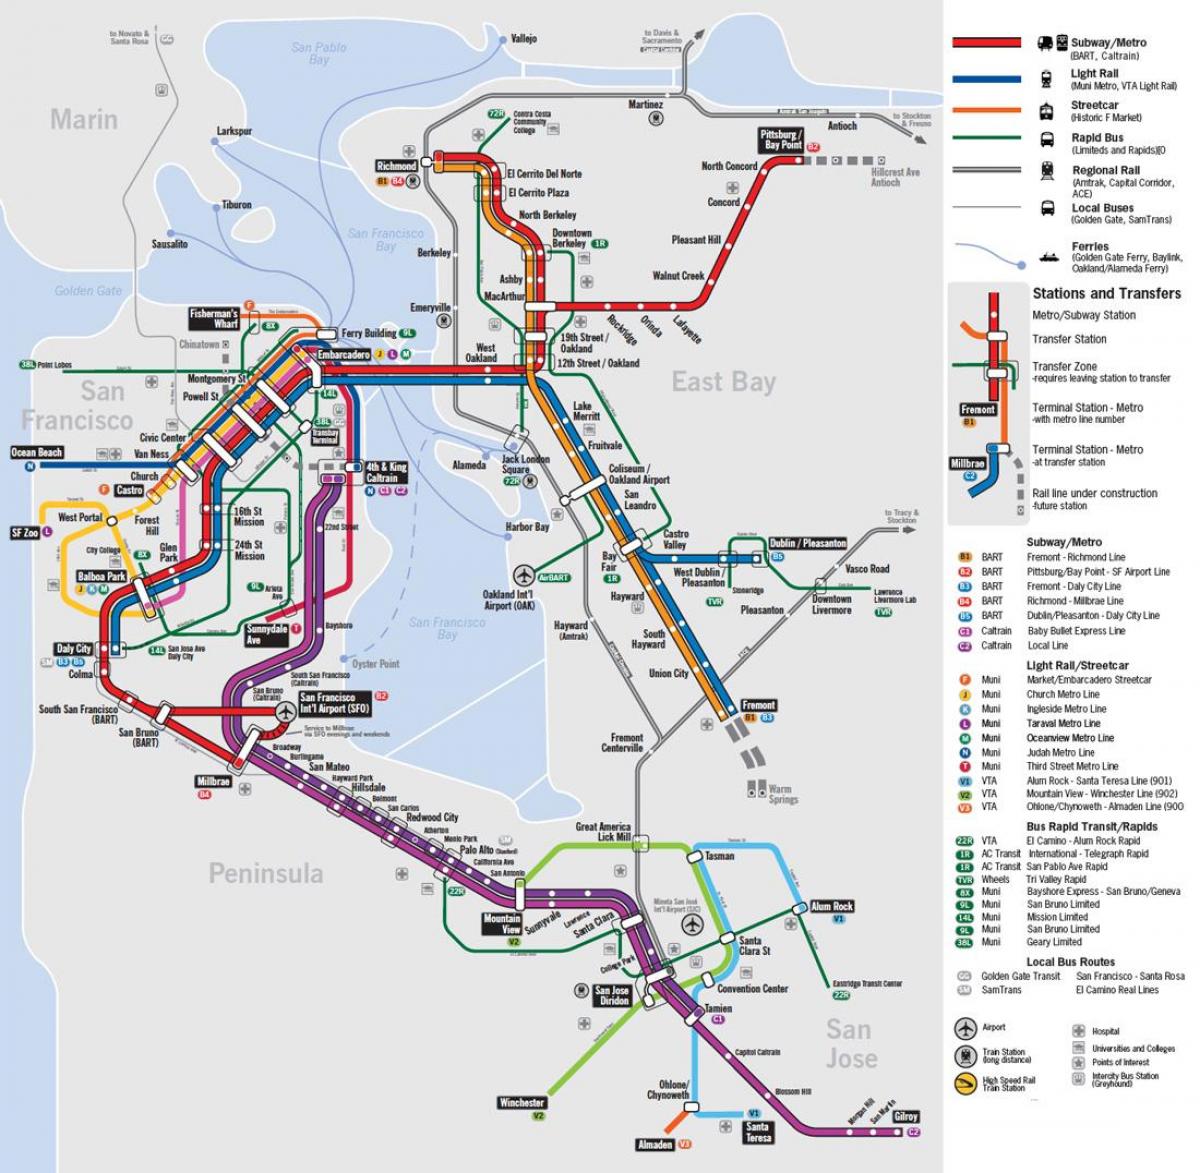 नक्शा सार्वजनिक परिवहन सैन फ्रांसिस्को